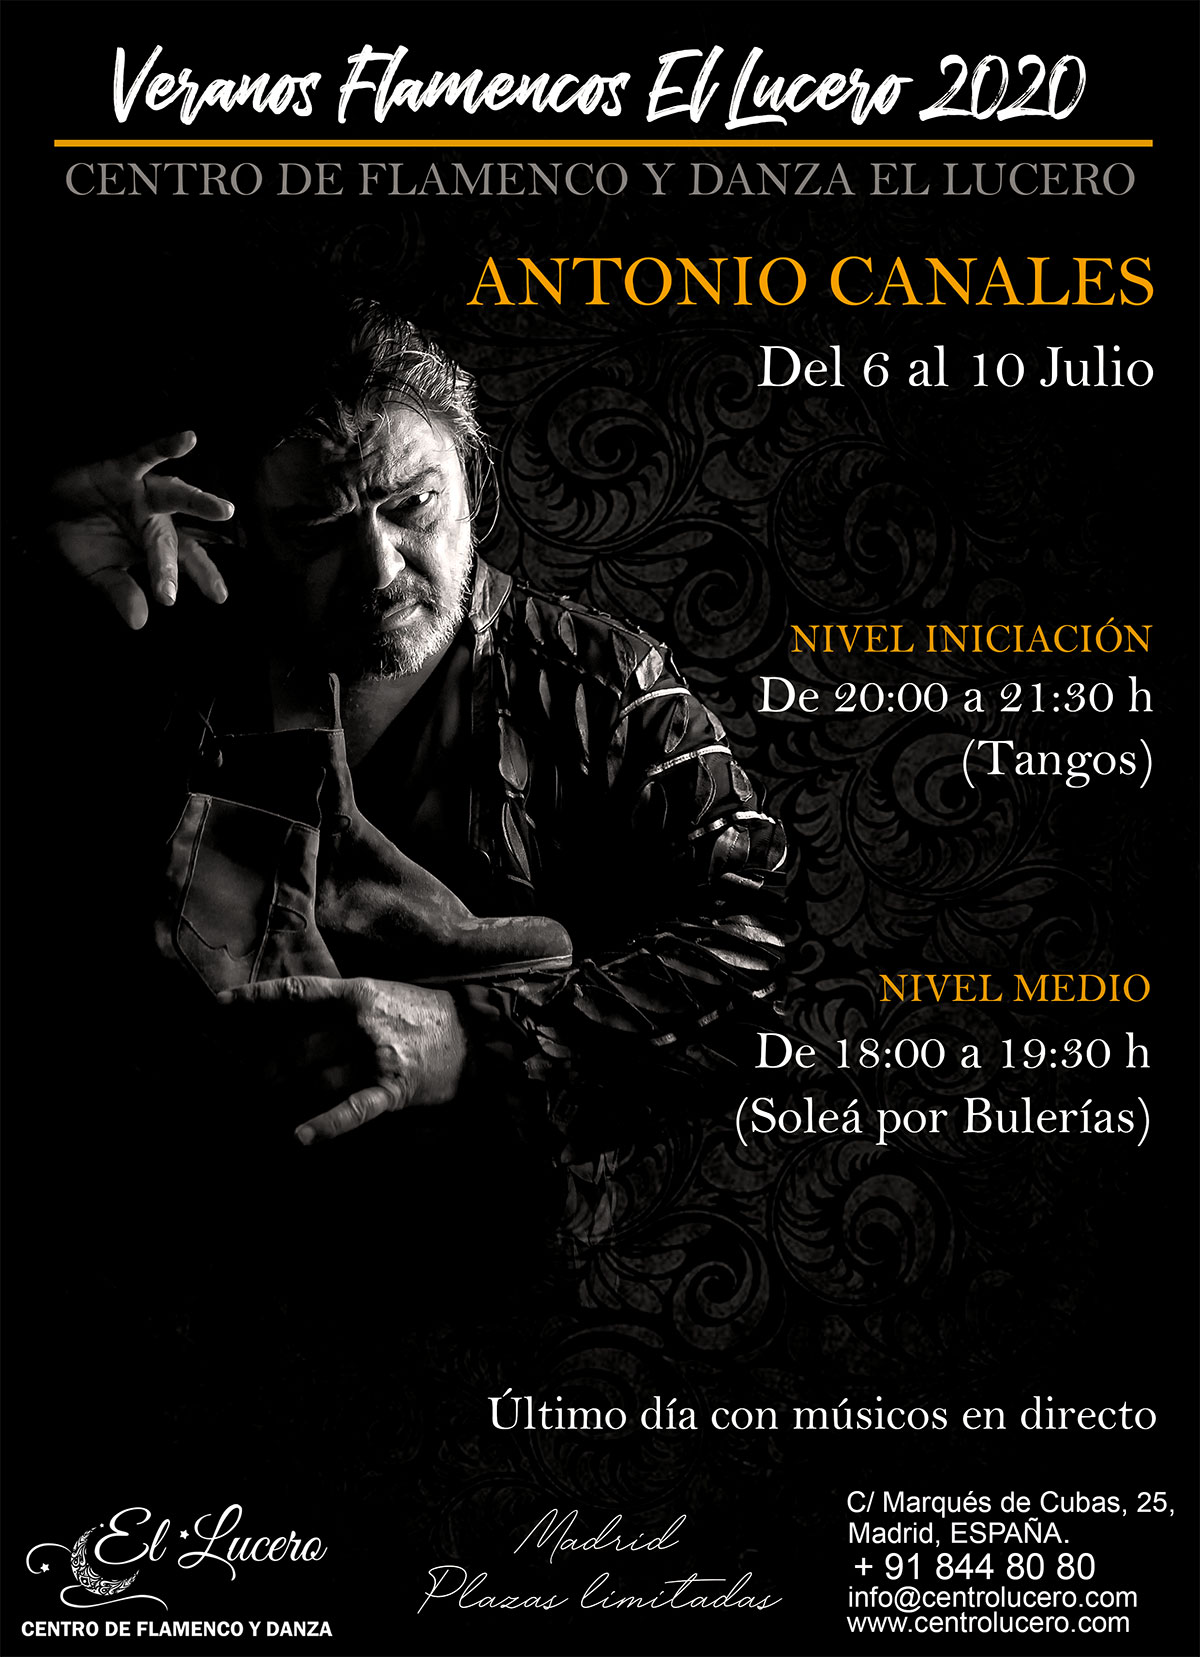 Veranos Flamencos EL LUCERO - Antonio Canales